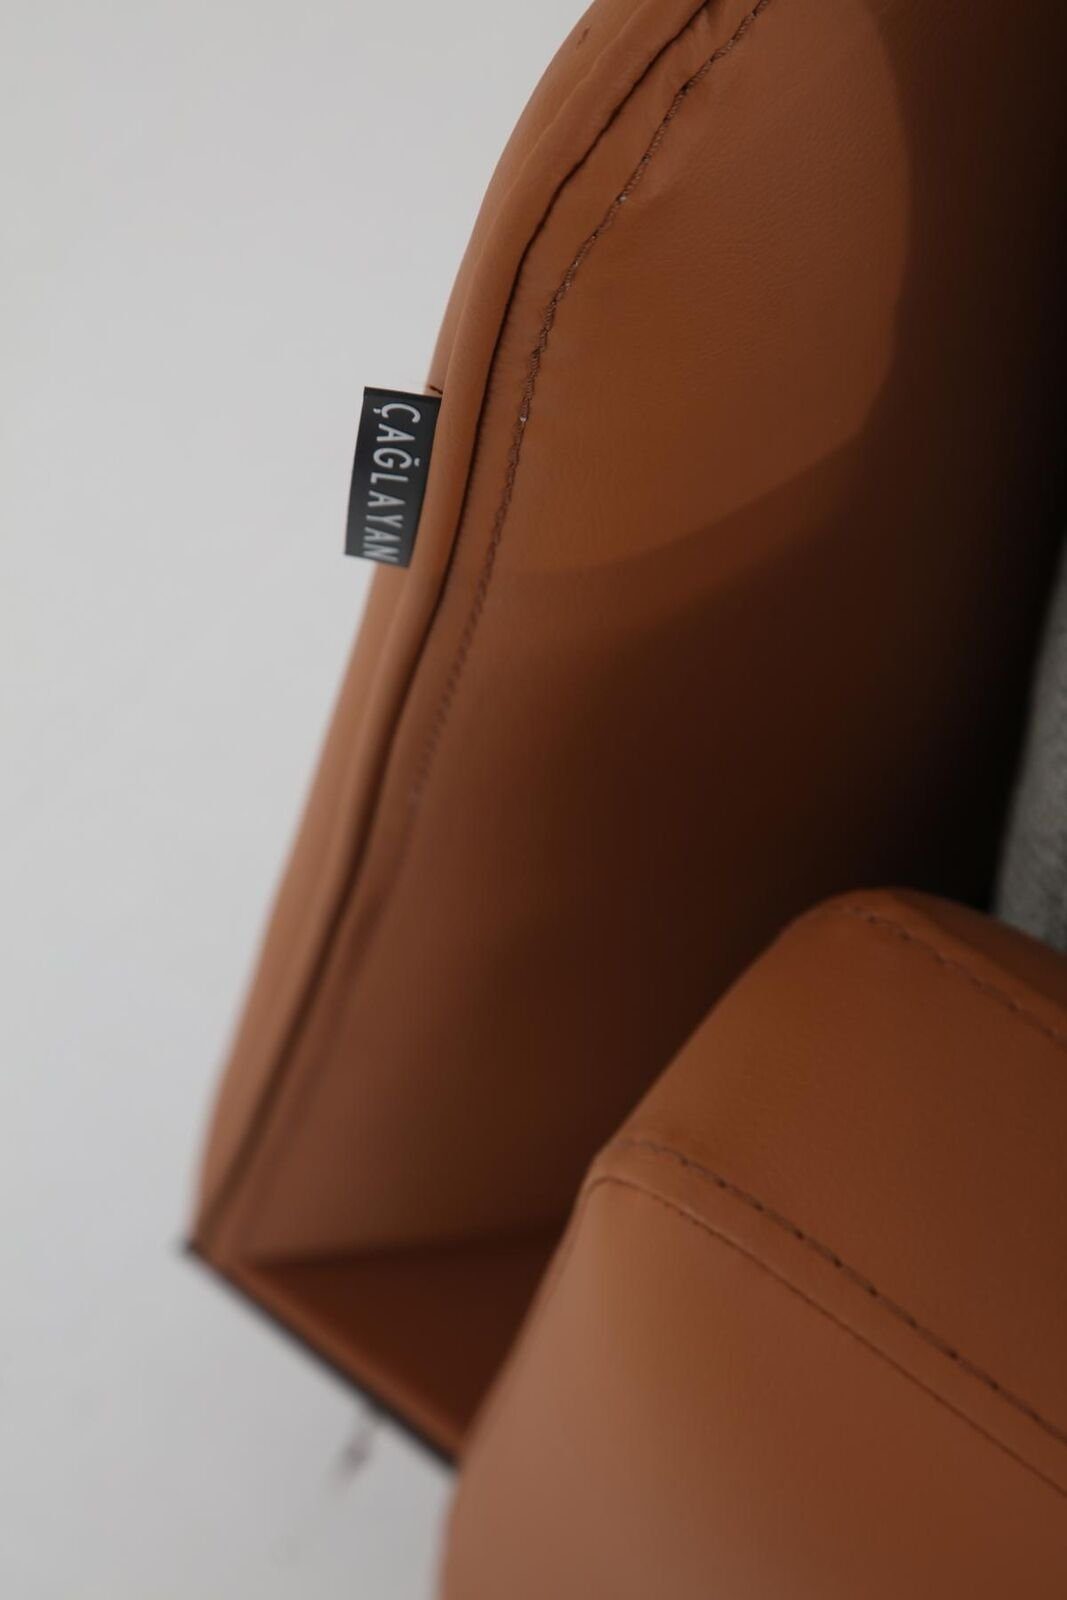 JVmoebel 2-Sitzer Zweisitzer Sofa 2 Orange in Teile, Modern 1 Europa Grau, Made Design Stoff Sitzer Wohnzimmer